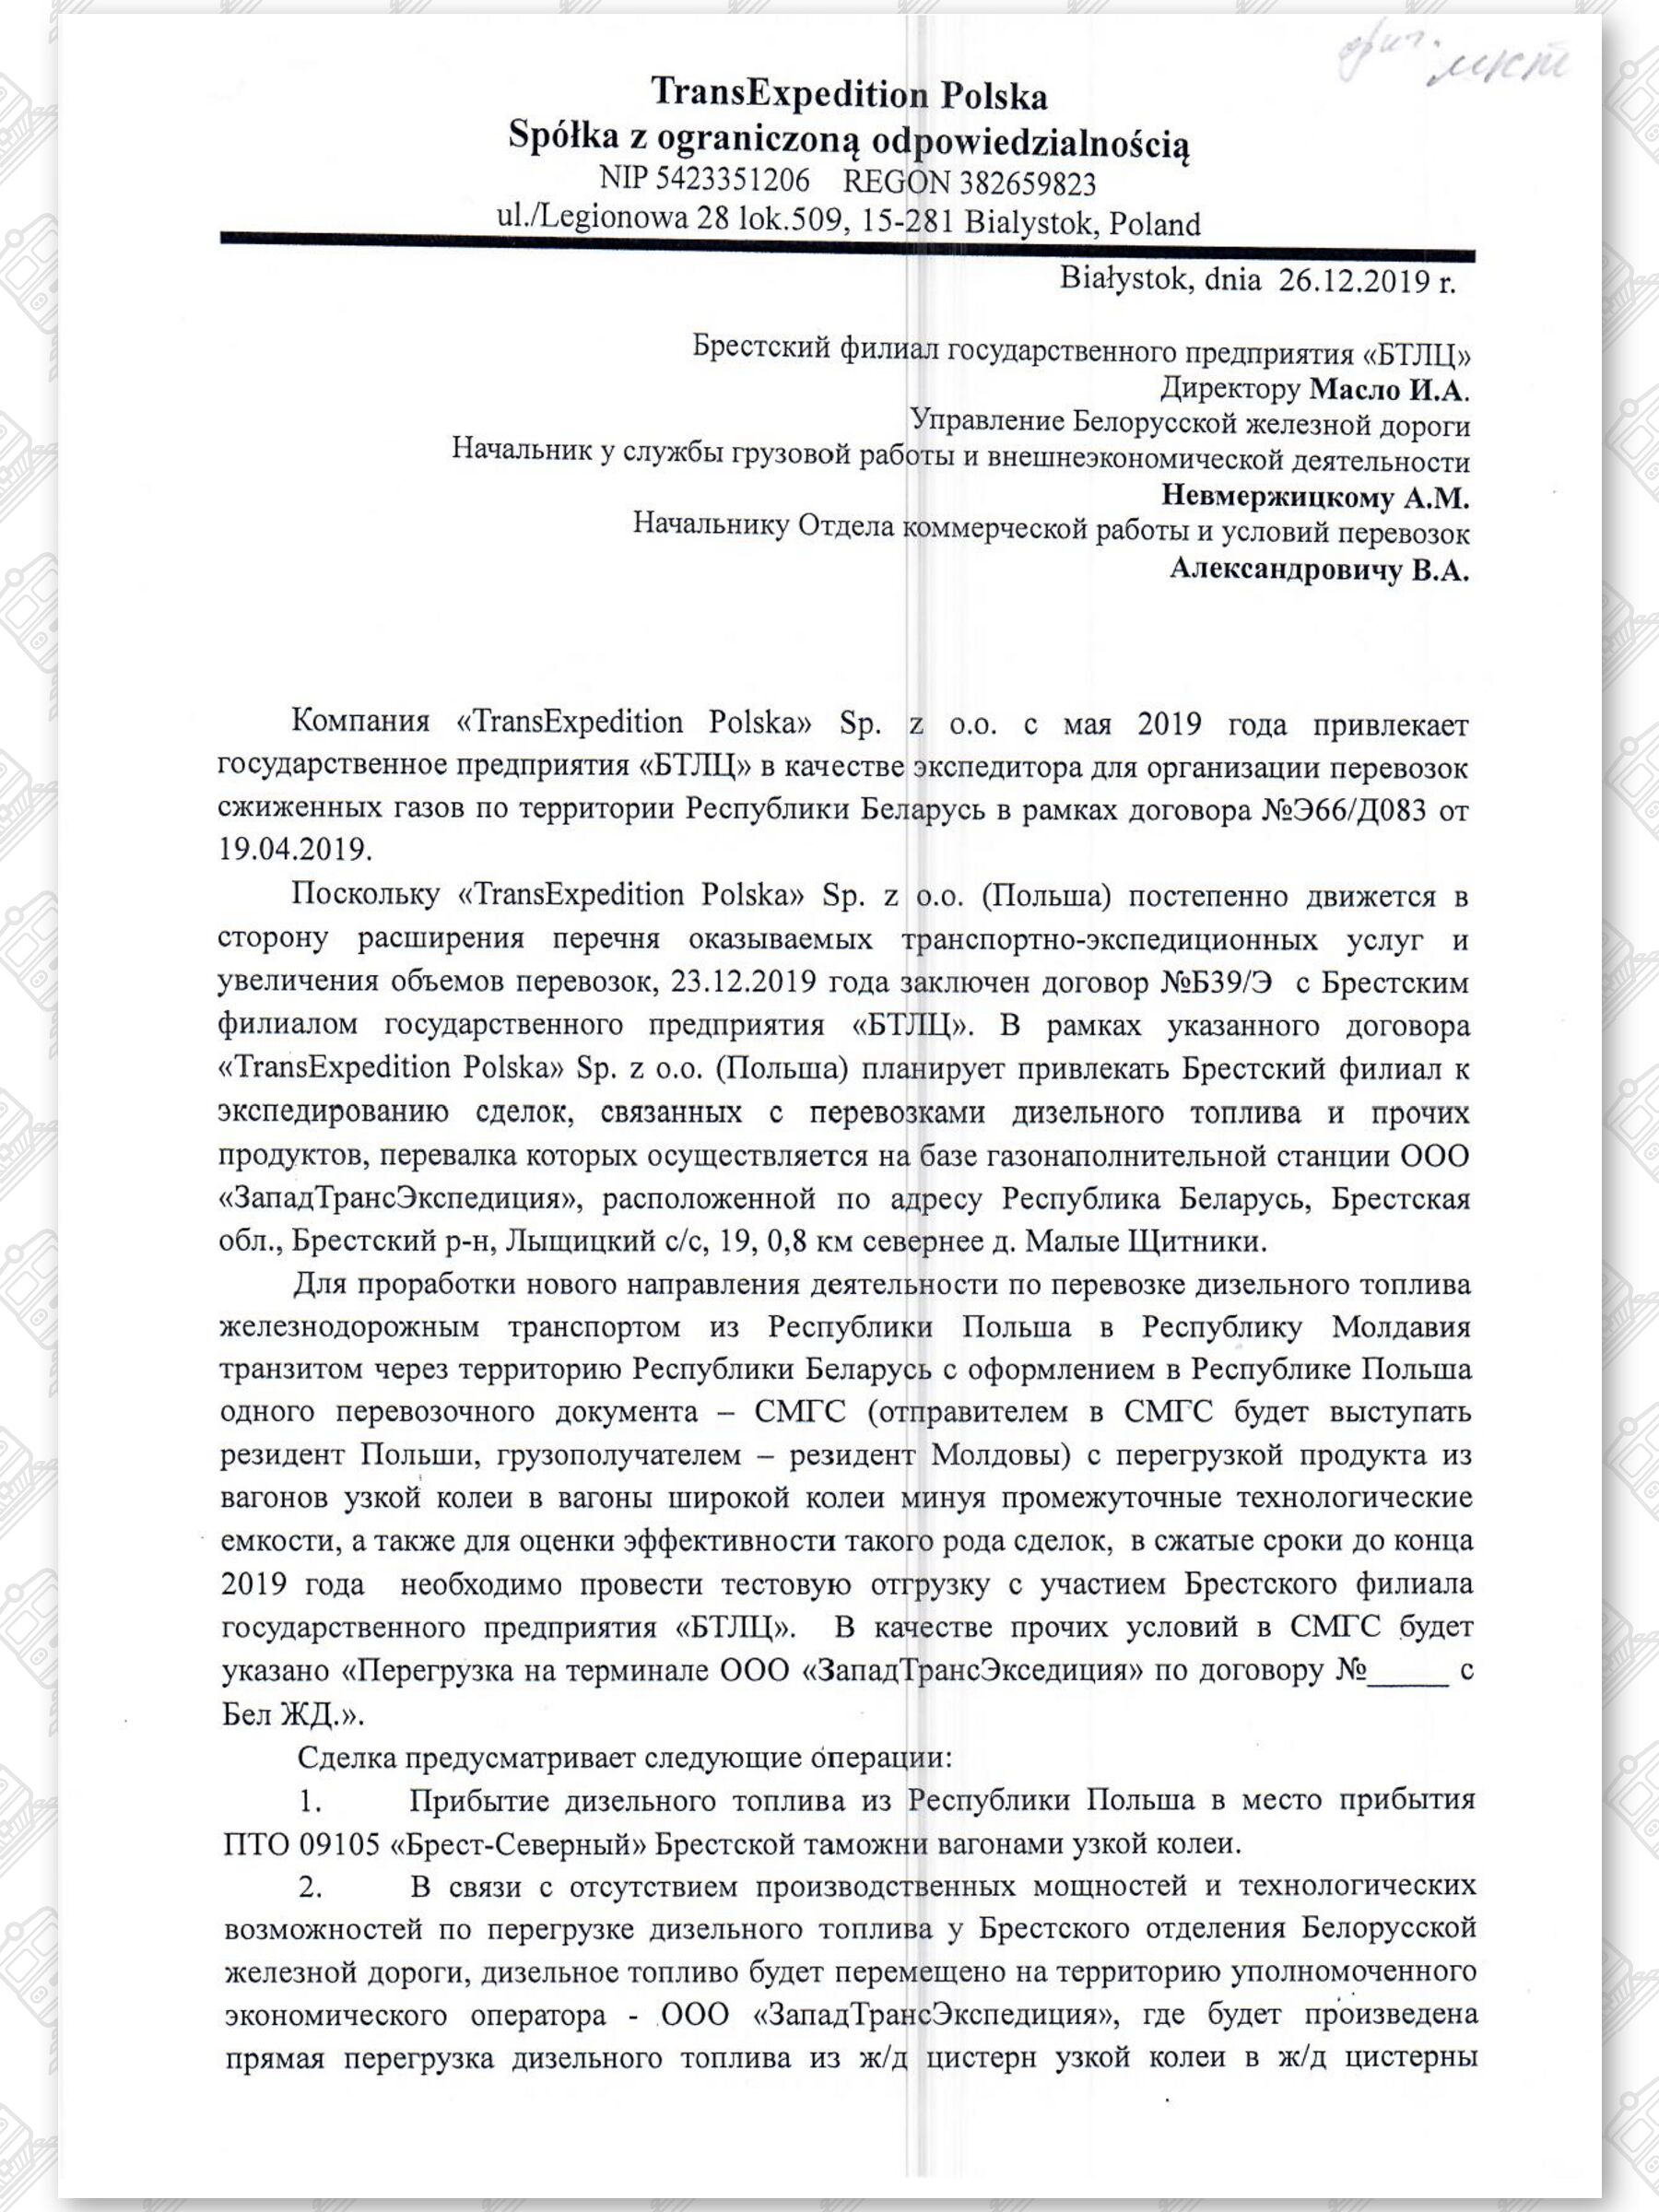 Письма компании «TransExpedition Polska» об организации перевозок сжиженных газов (Страница 5)